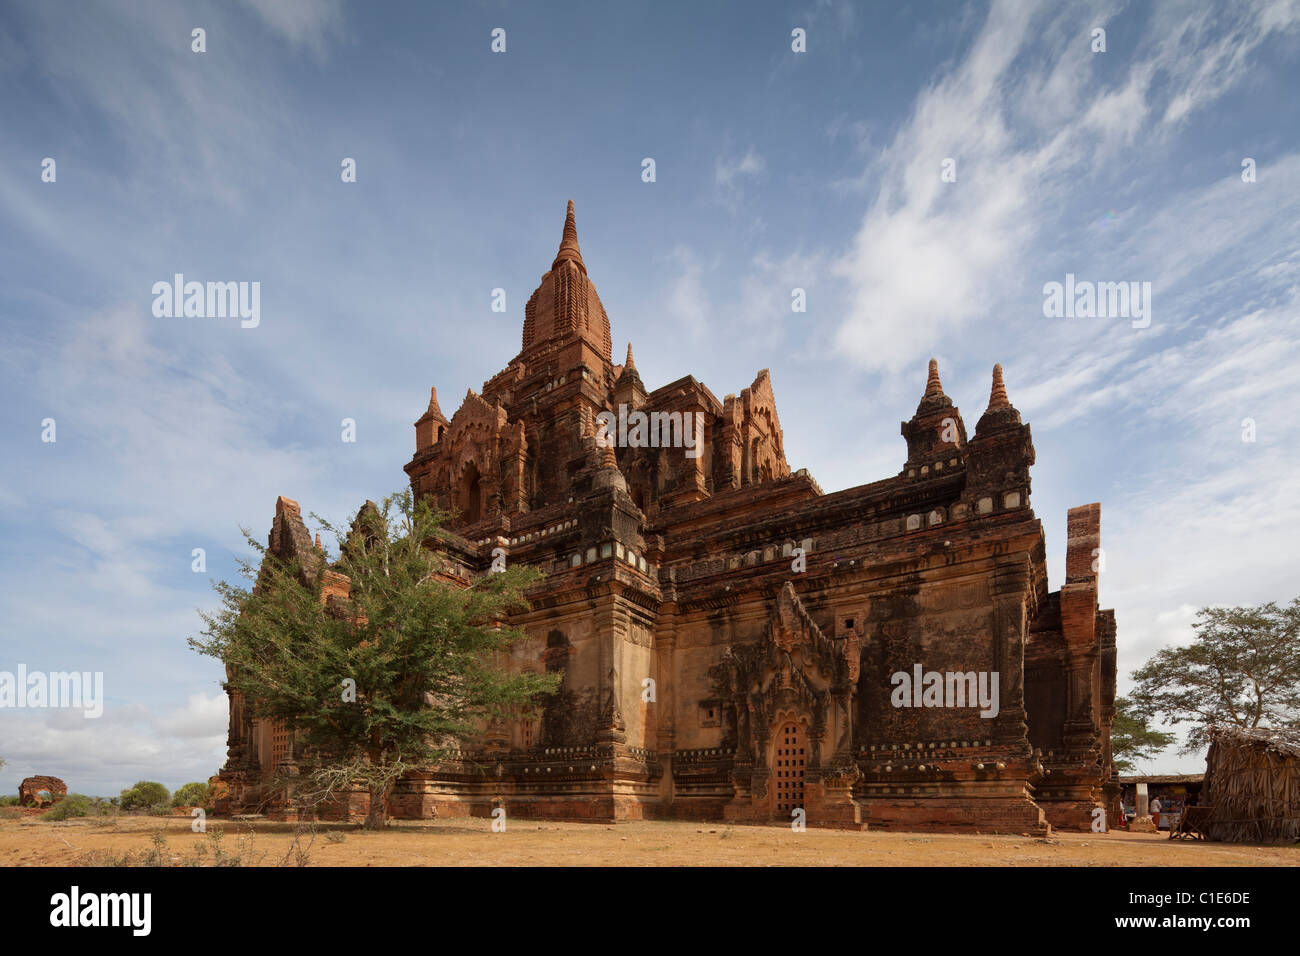 Vista del templo Htilominlo, suroeste de Bagan, Birmania Myanmar Foto de stock